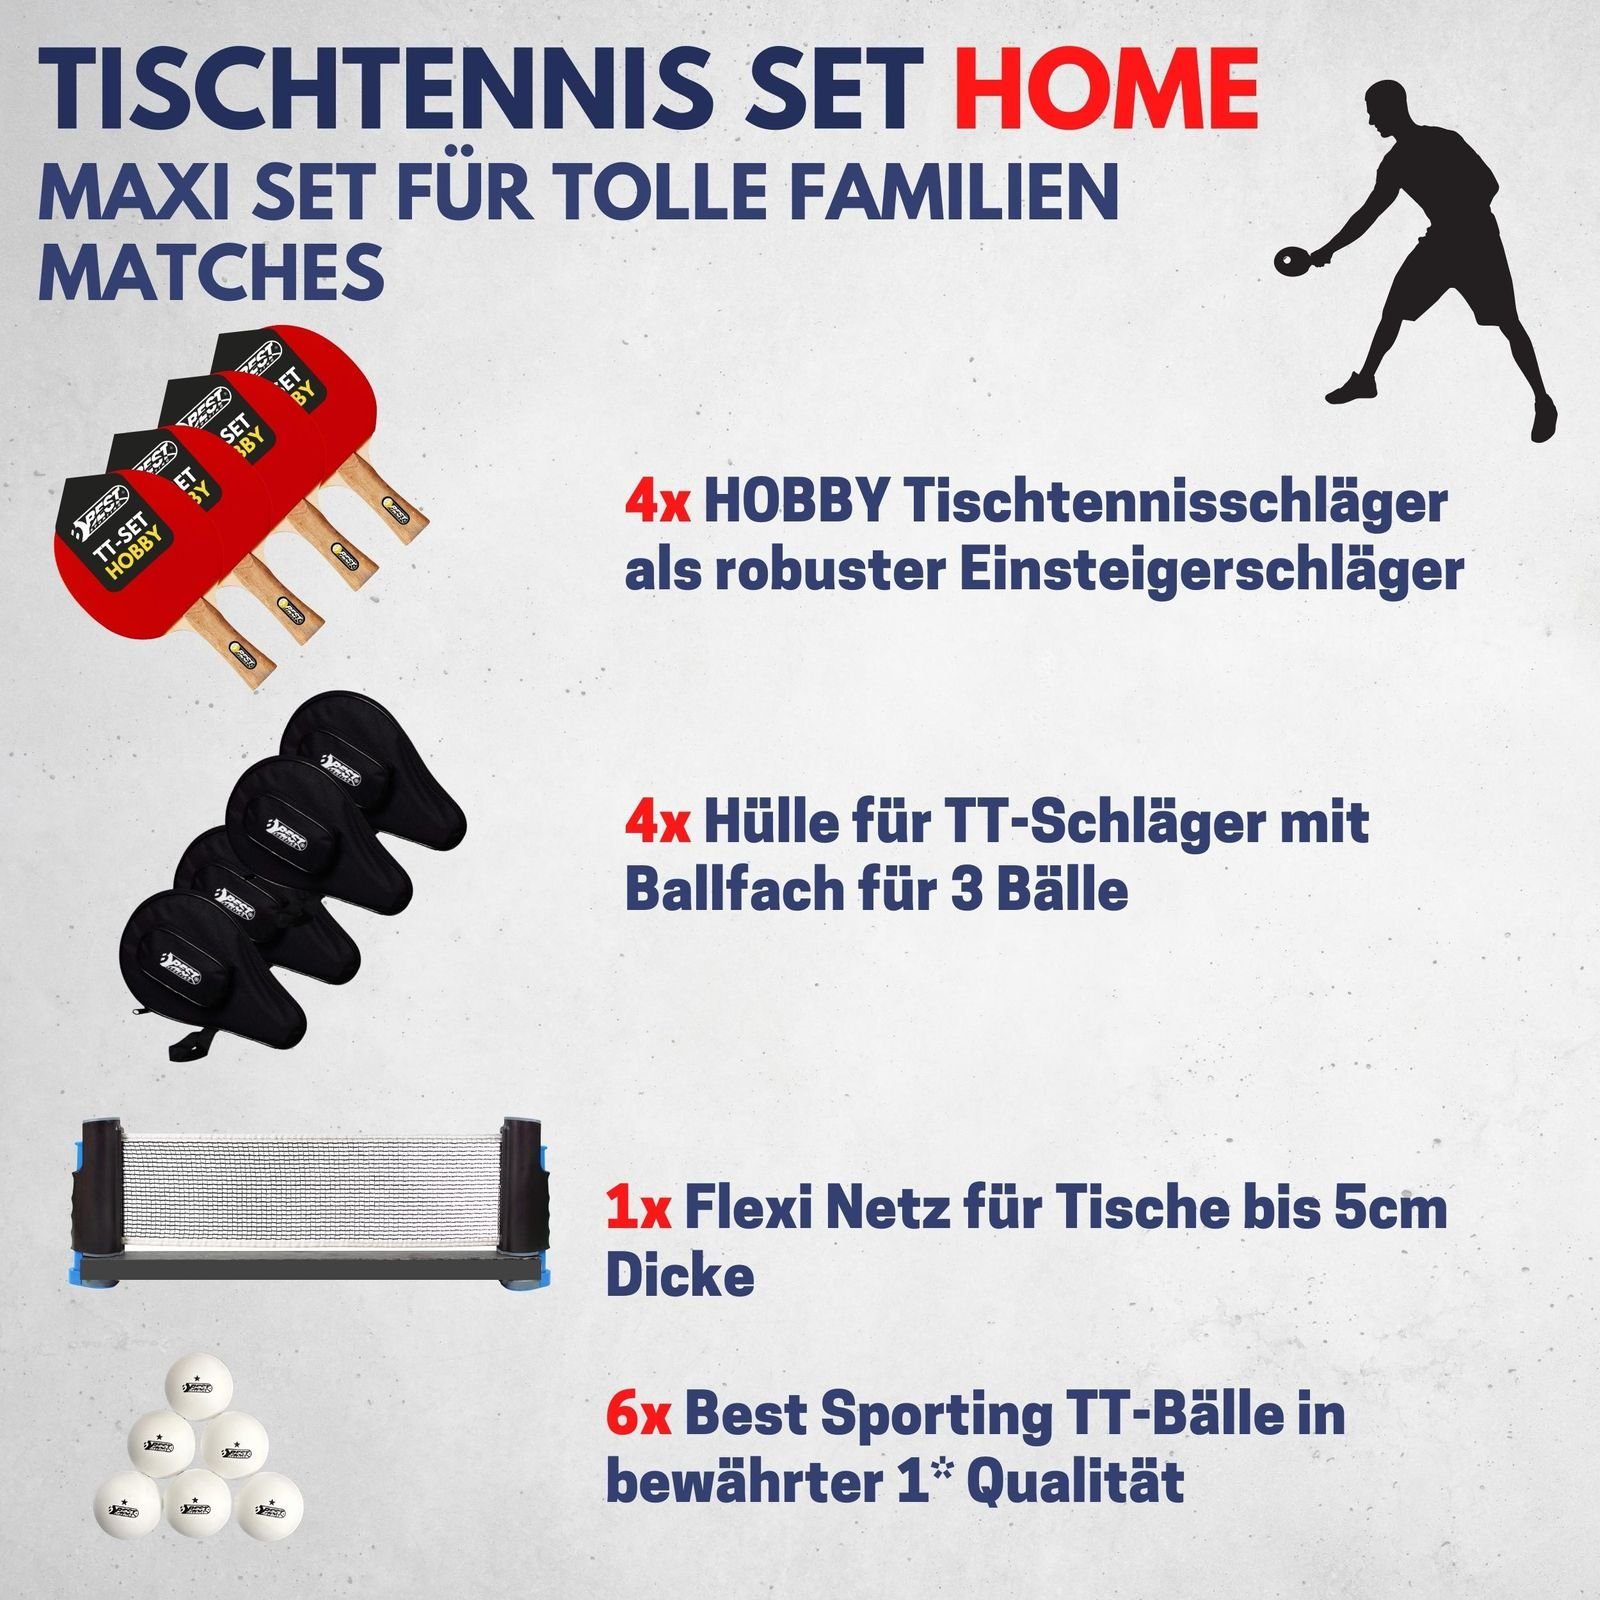 Best Sporting Tischtennisschläger Tischtennis I Table HOME Tischtennisbälle wertiges Set Racket) Netz I Schläger, 4 - (10-teiliges 1* Flexi Set 4 Tennis und Taschen, Tischtennissets